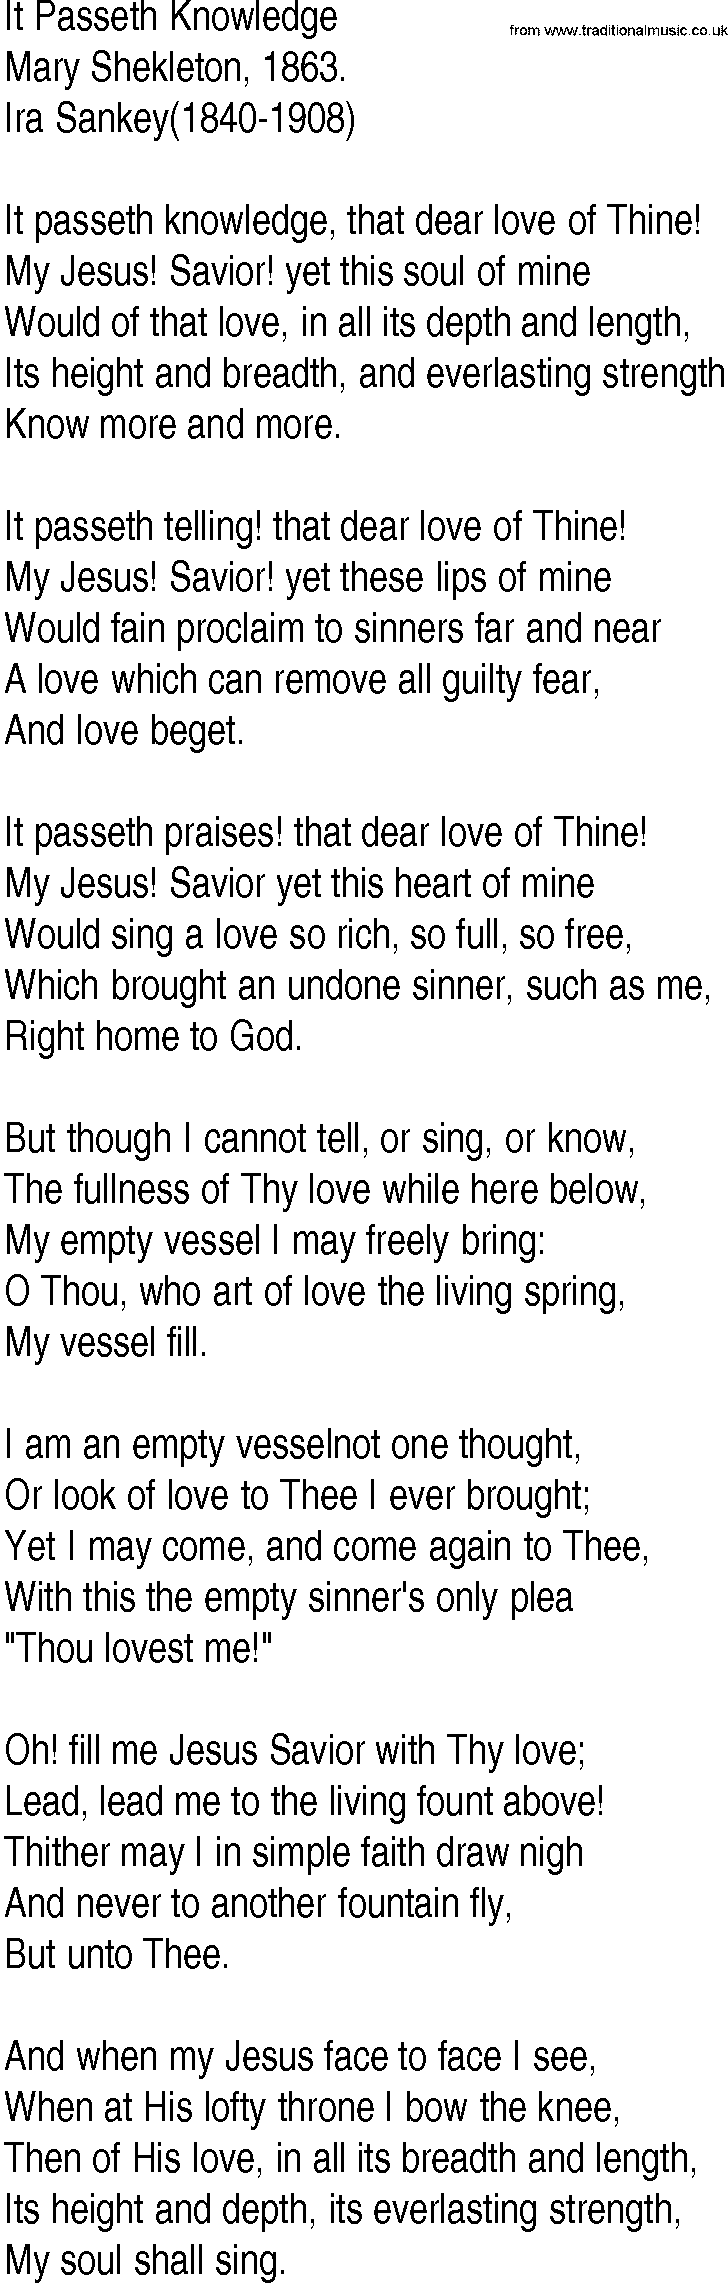 Hymn and Gospel Song: It Passeth Knowledge by Mary Shekleton lyrics